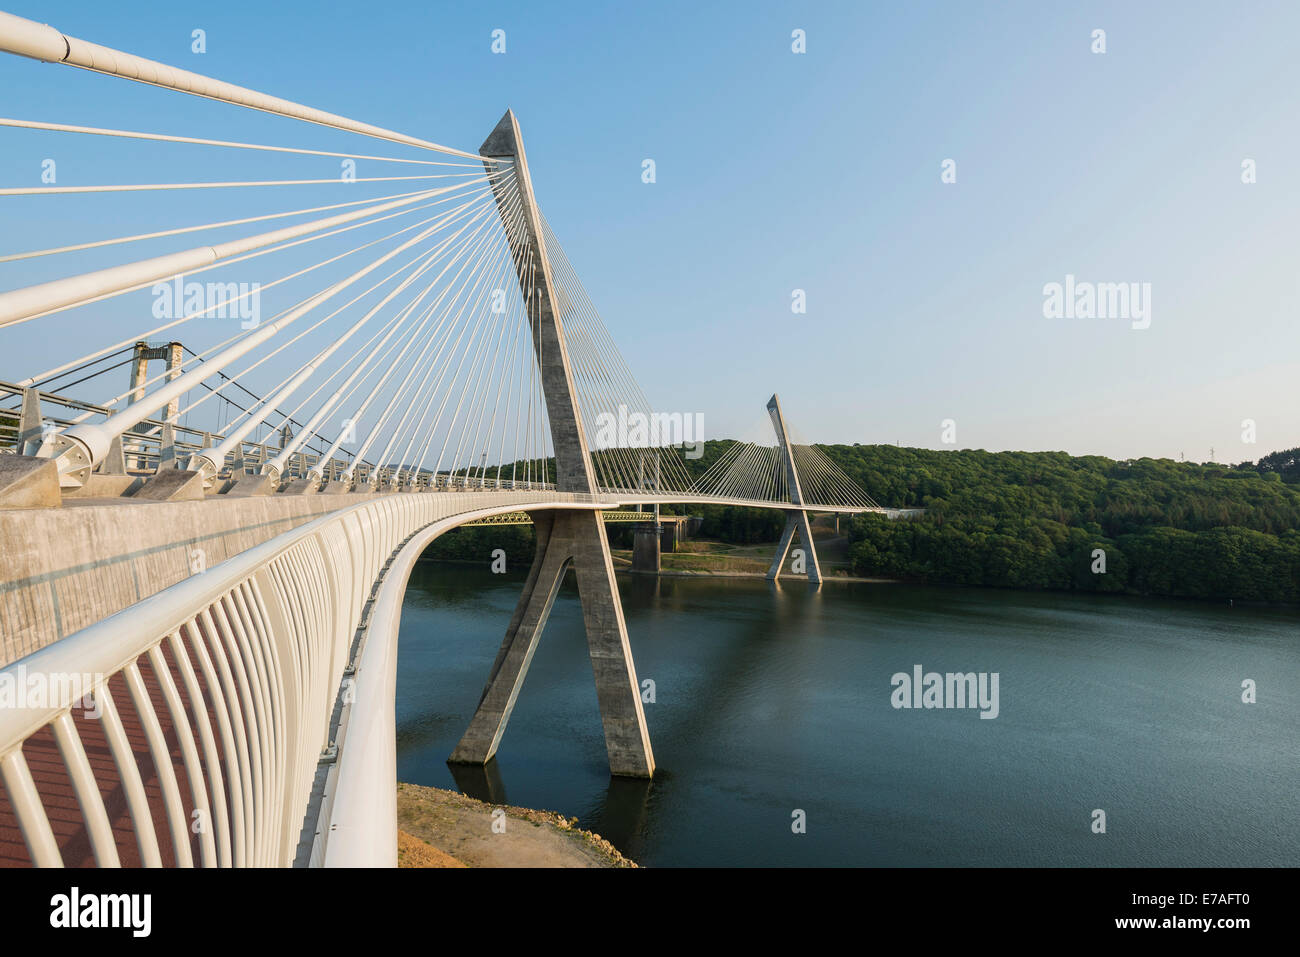 Pont de Térénez, a cable-stayed bridge, Aulne River, Brittany, France Stock Photo